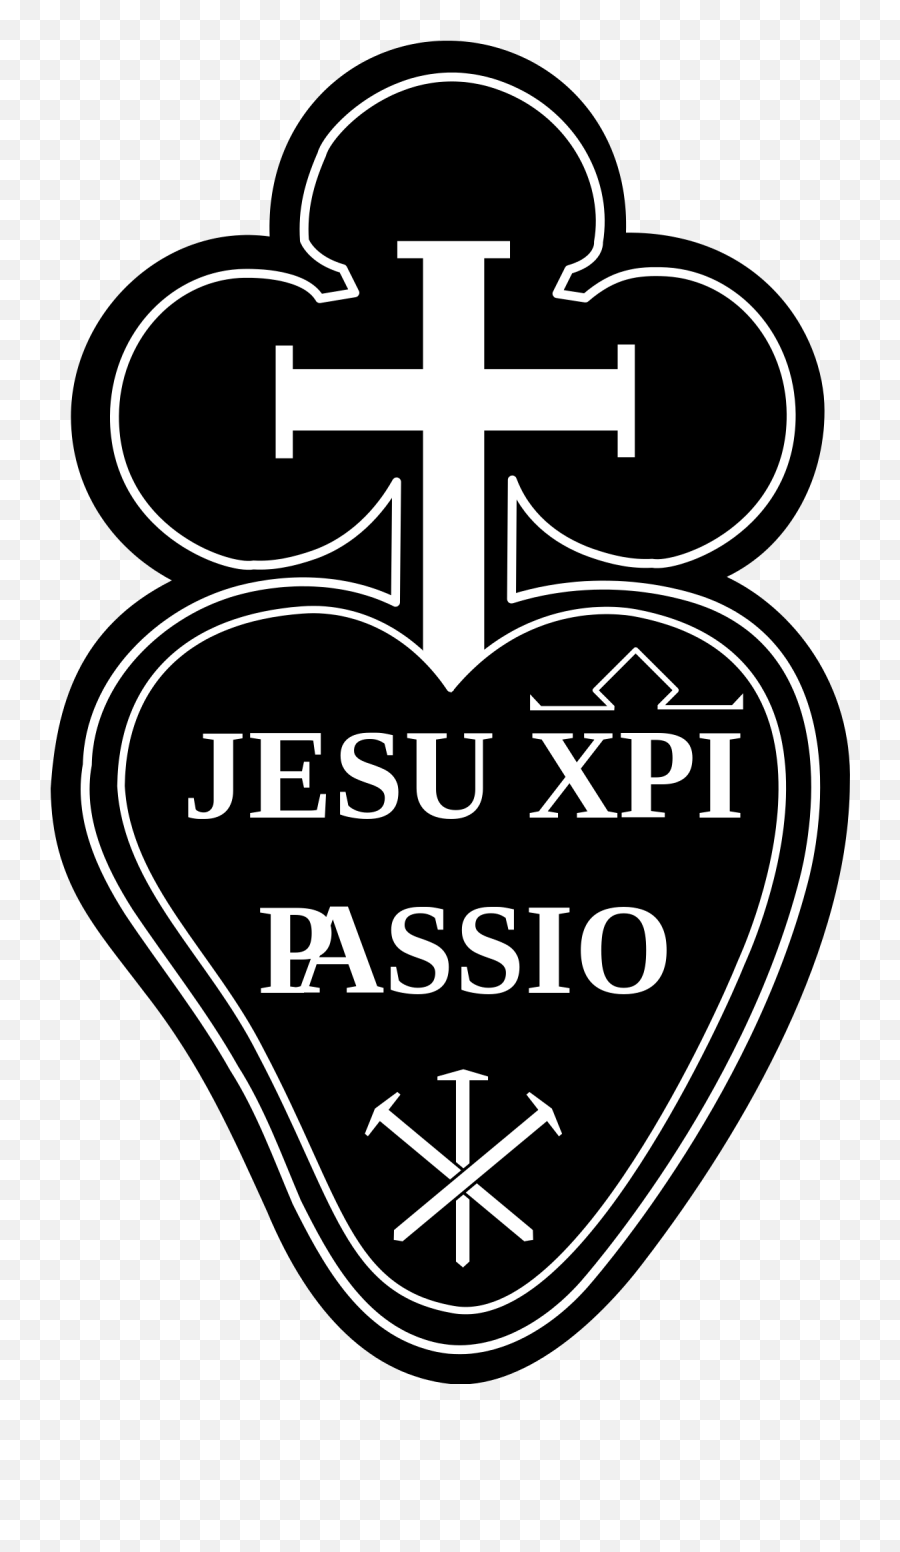 Religiosas De La Pasión Jesucristo - Wikipedia La Jesu Xpi Passio Png,Jesucristo Png